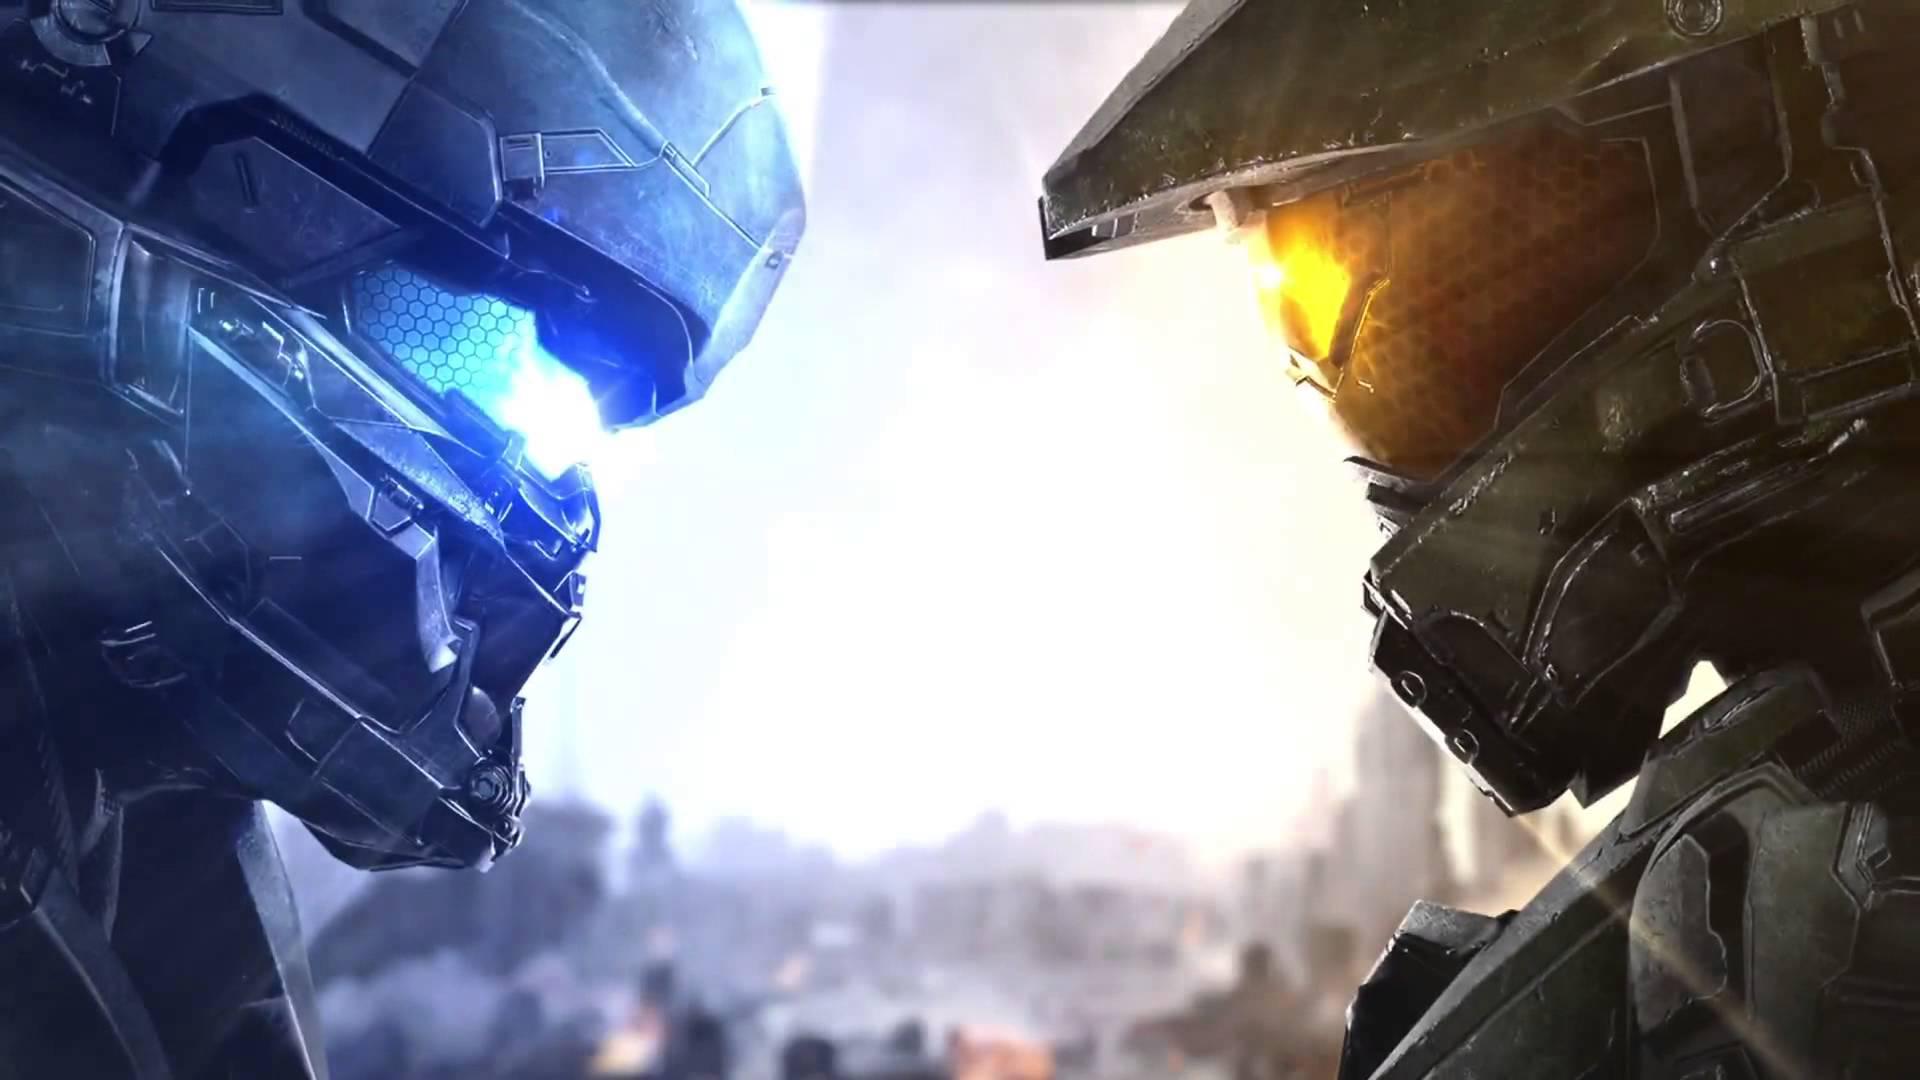 Znamy zawartość darmowego DLC do Halo 5: Guardians. Zapowiada się obfity weekend